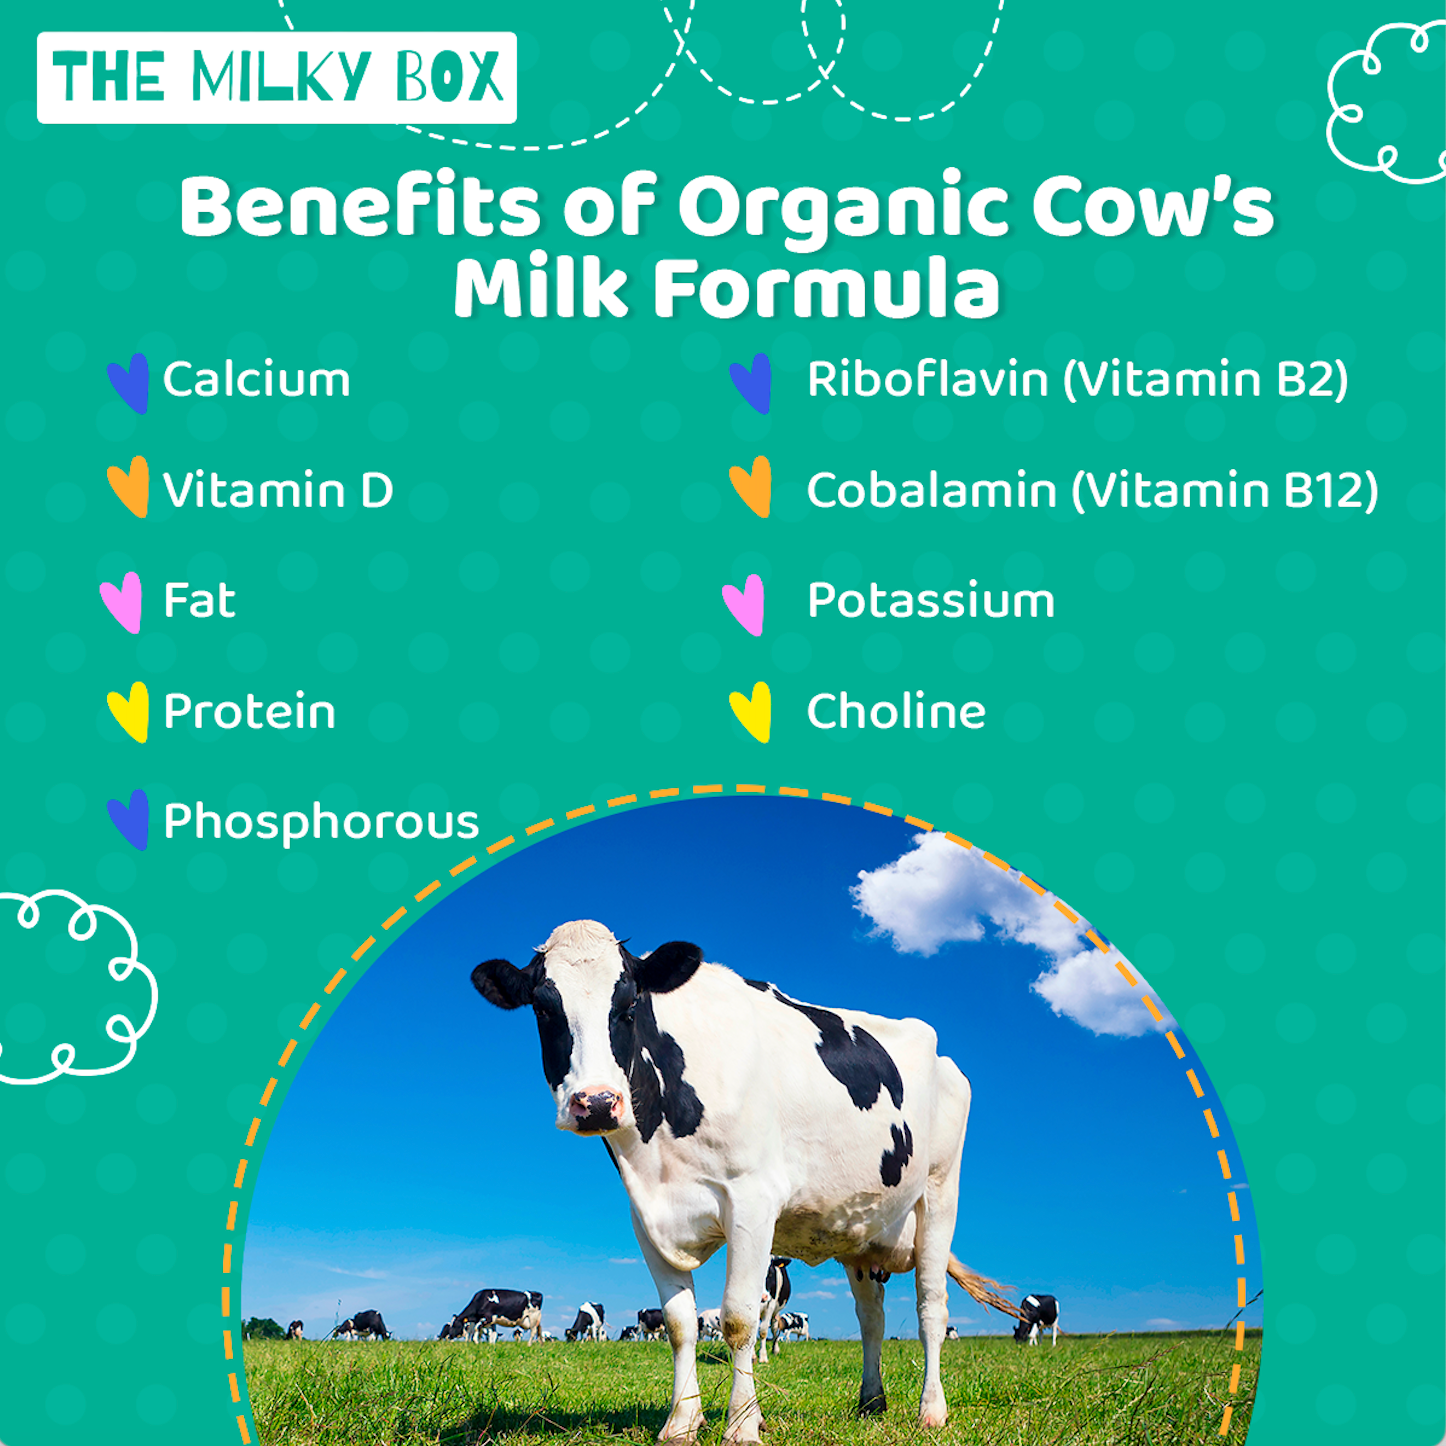 Health Benefits of Cow’s Milk